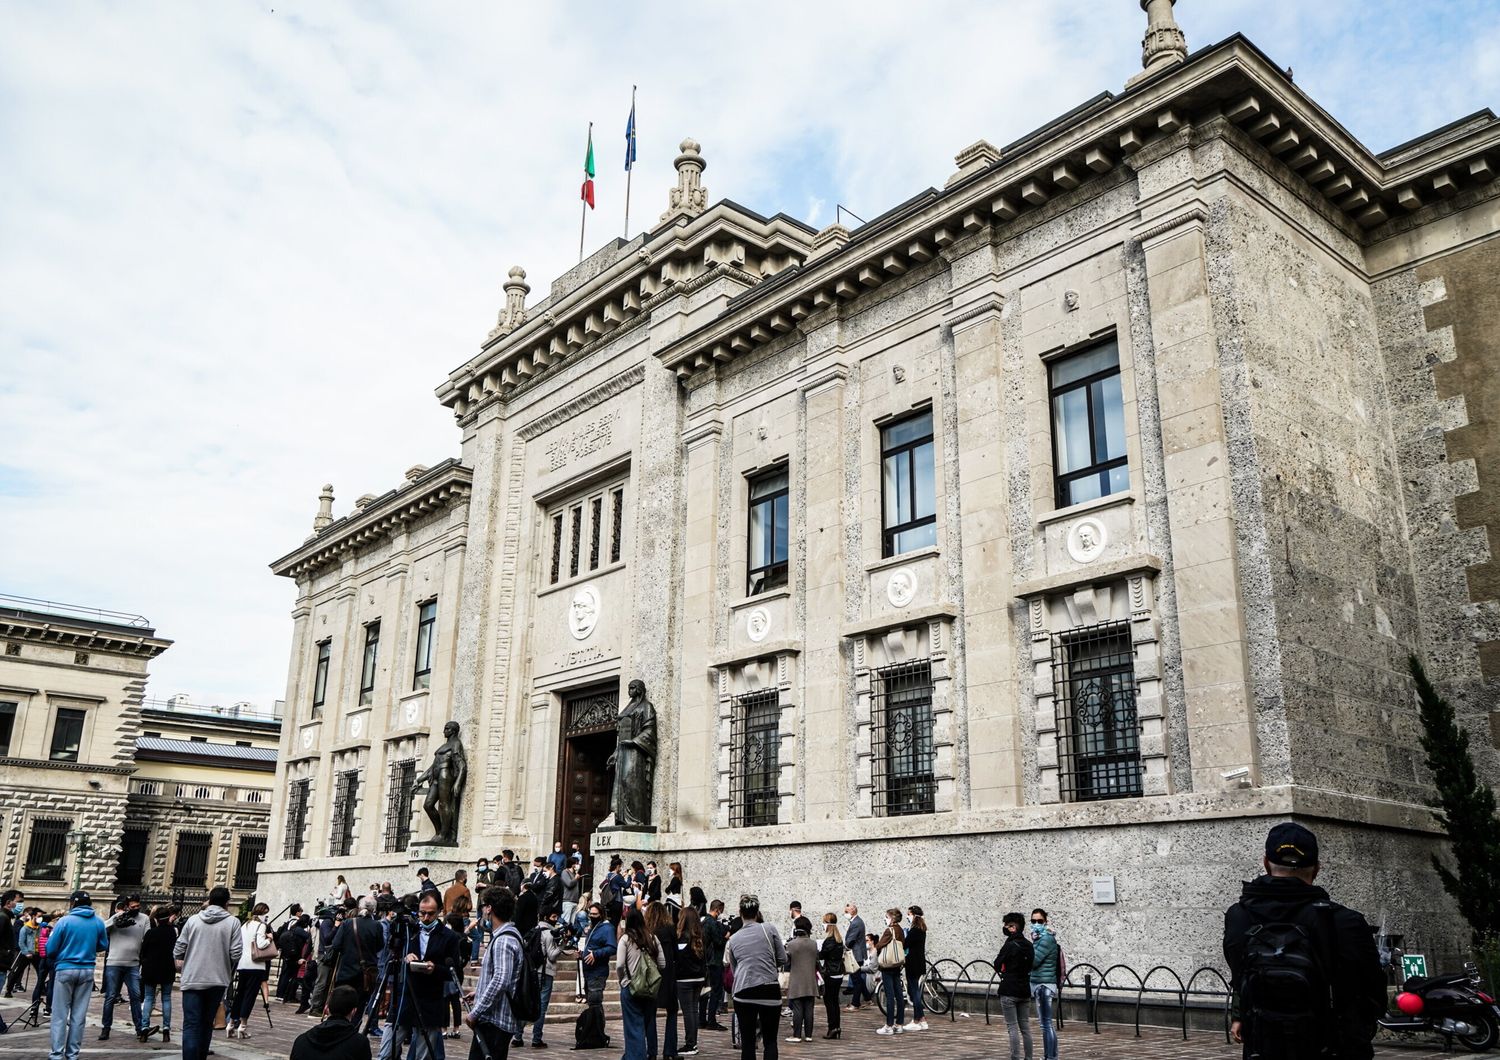 Il palazzo che ospita la procura di Bergamo